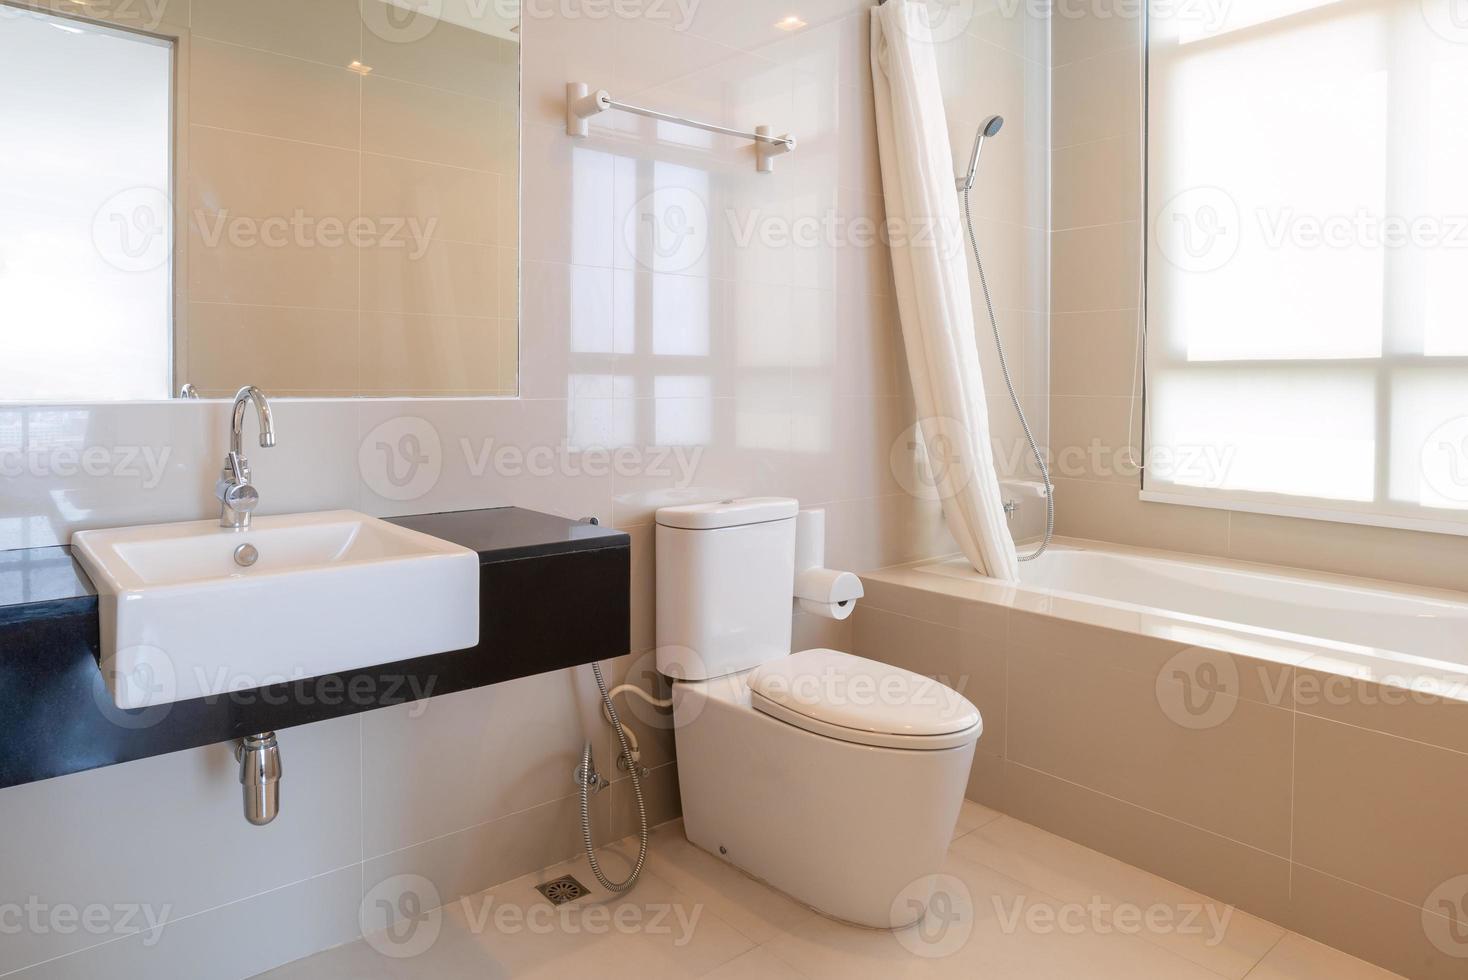 Interior de casa de diseño moderno cuarto de baño con ducha e inodoro foto